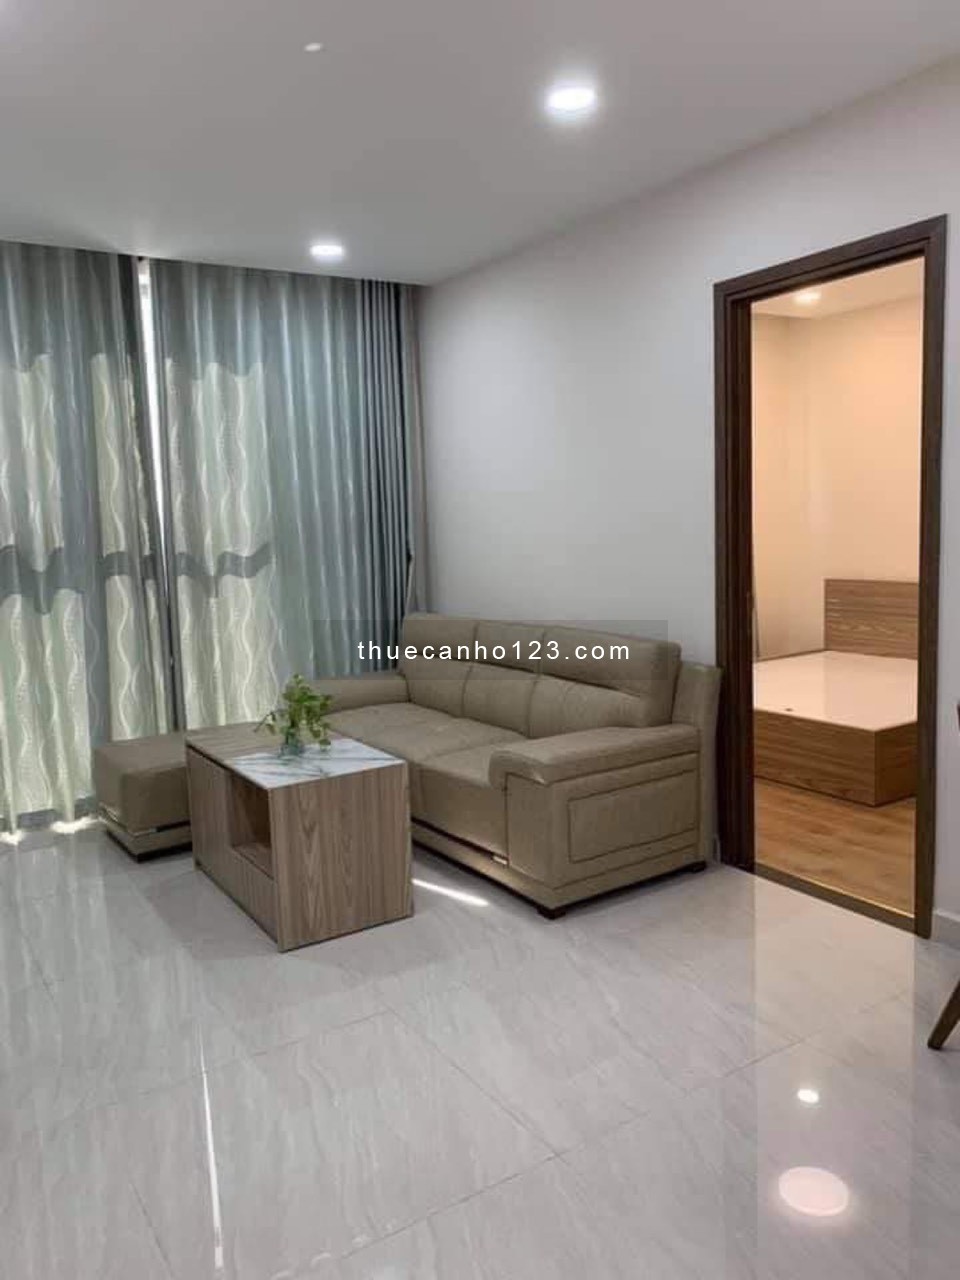 Cho thuê căn hộ Park Legend 2 phòng ngủ có nội thất giá 18 triệu 0908879243 Tuấn